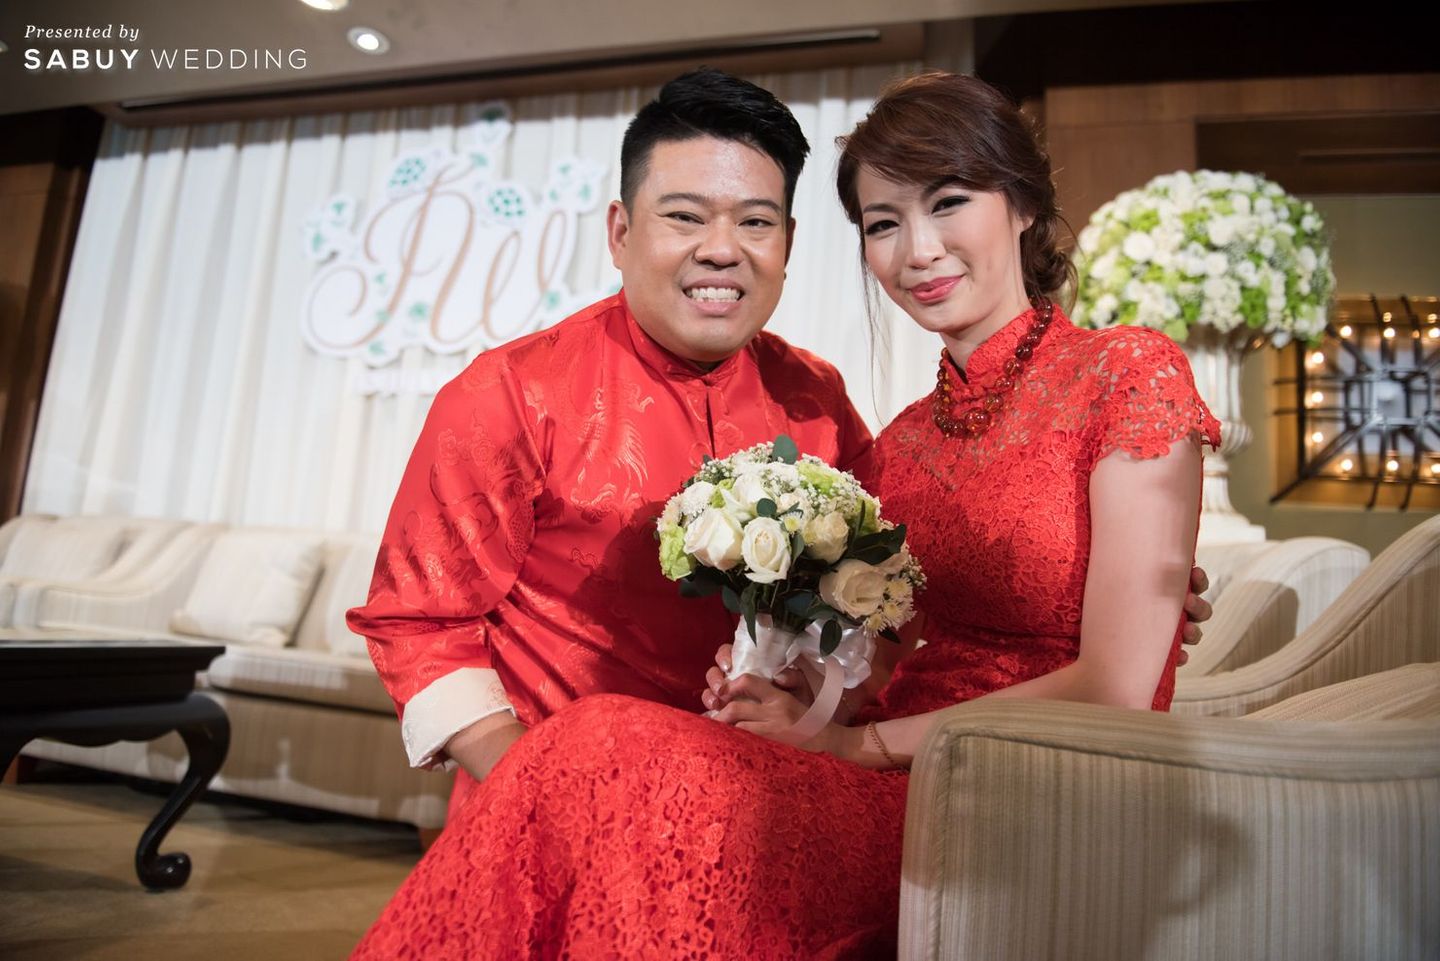 เจ้าบ่าว,เจ้าสาว,แต่งงาน,พิธีหมั้น รีวิวงานหมั้นไต้หวันพิธีเป๊ะ เน้นสนุกในงานเลี้ยง มีกิมมิคเก๋เป็น Photo Booth @The Peninsula Bangkok